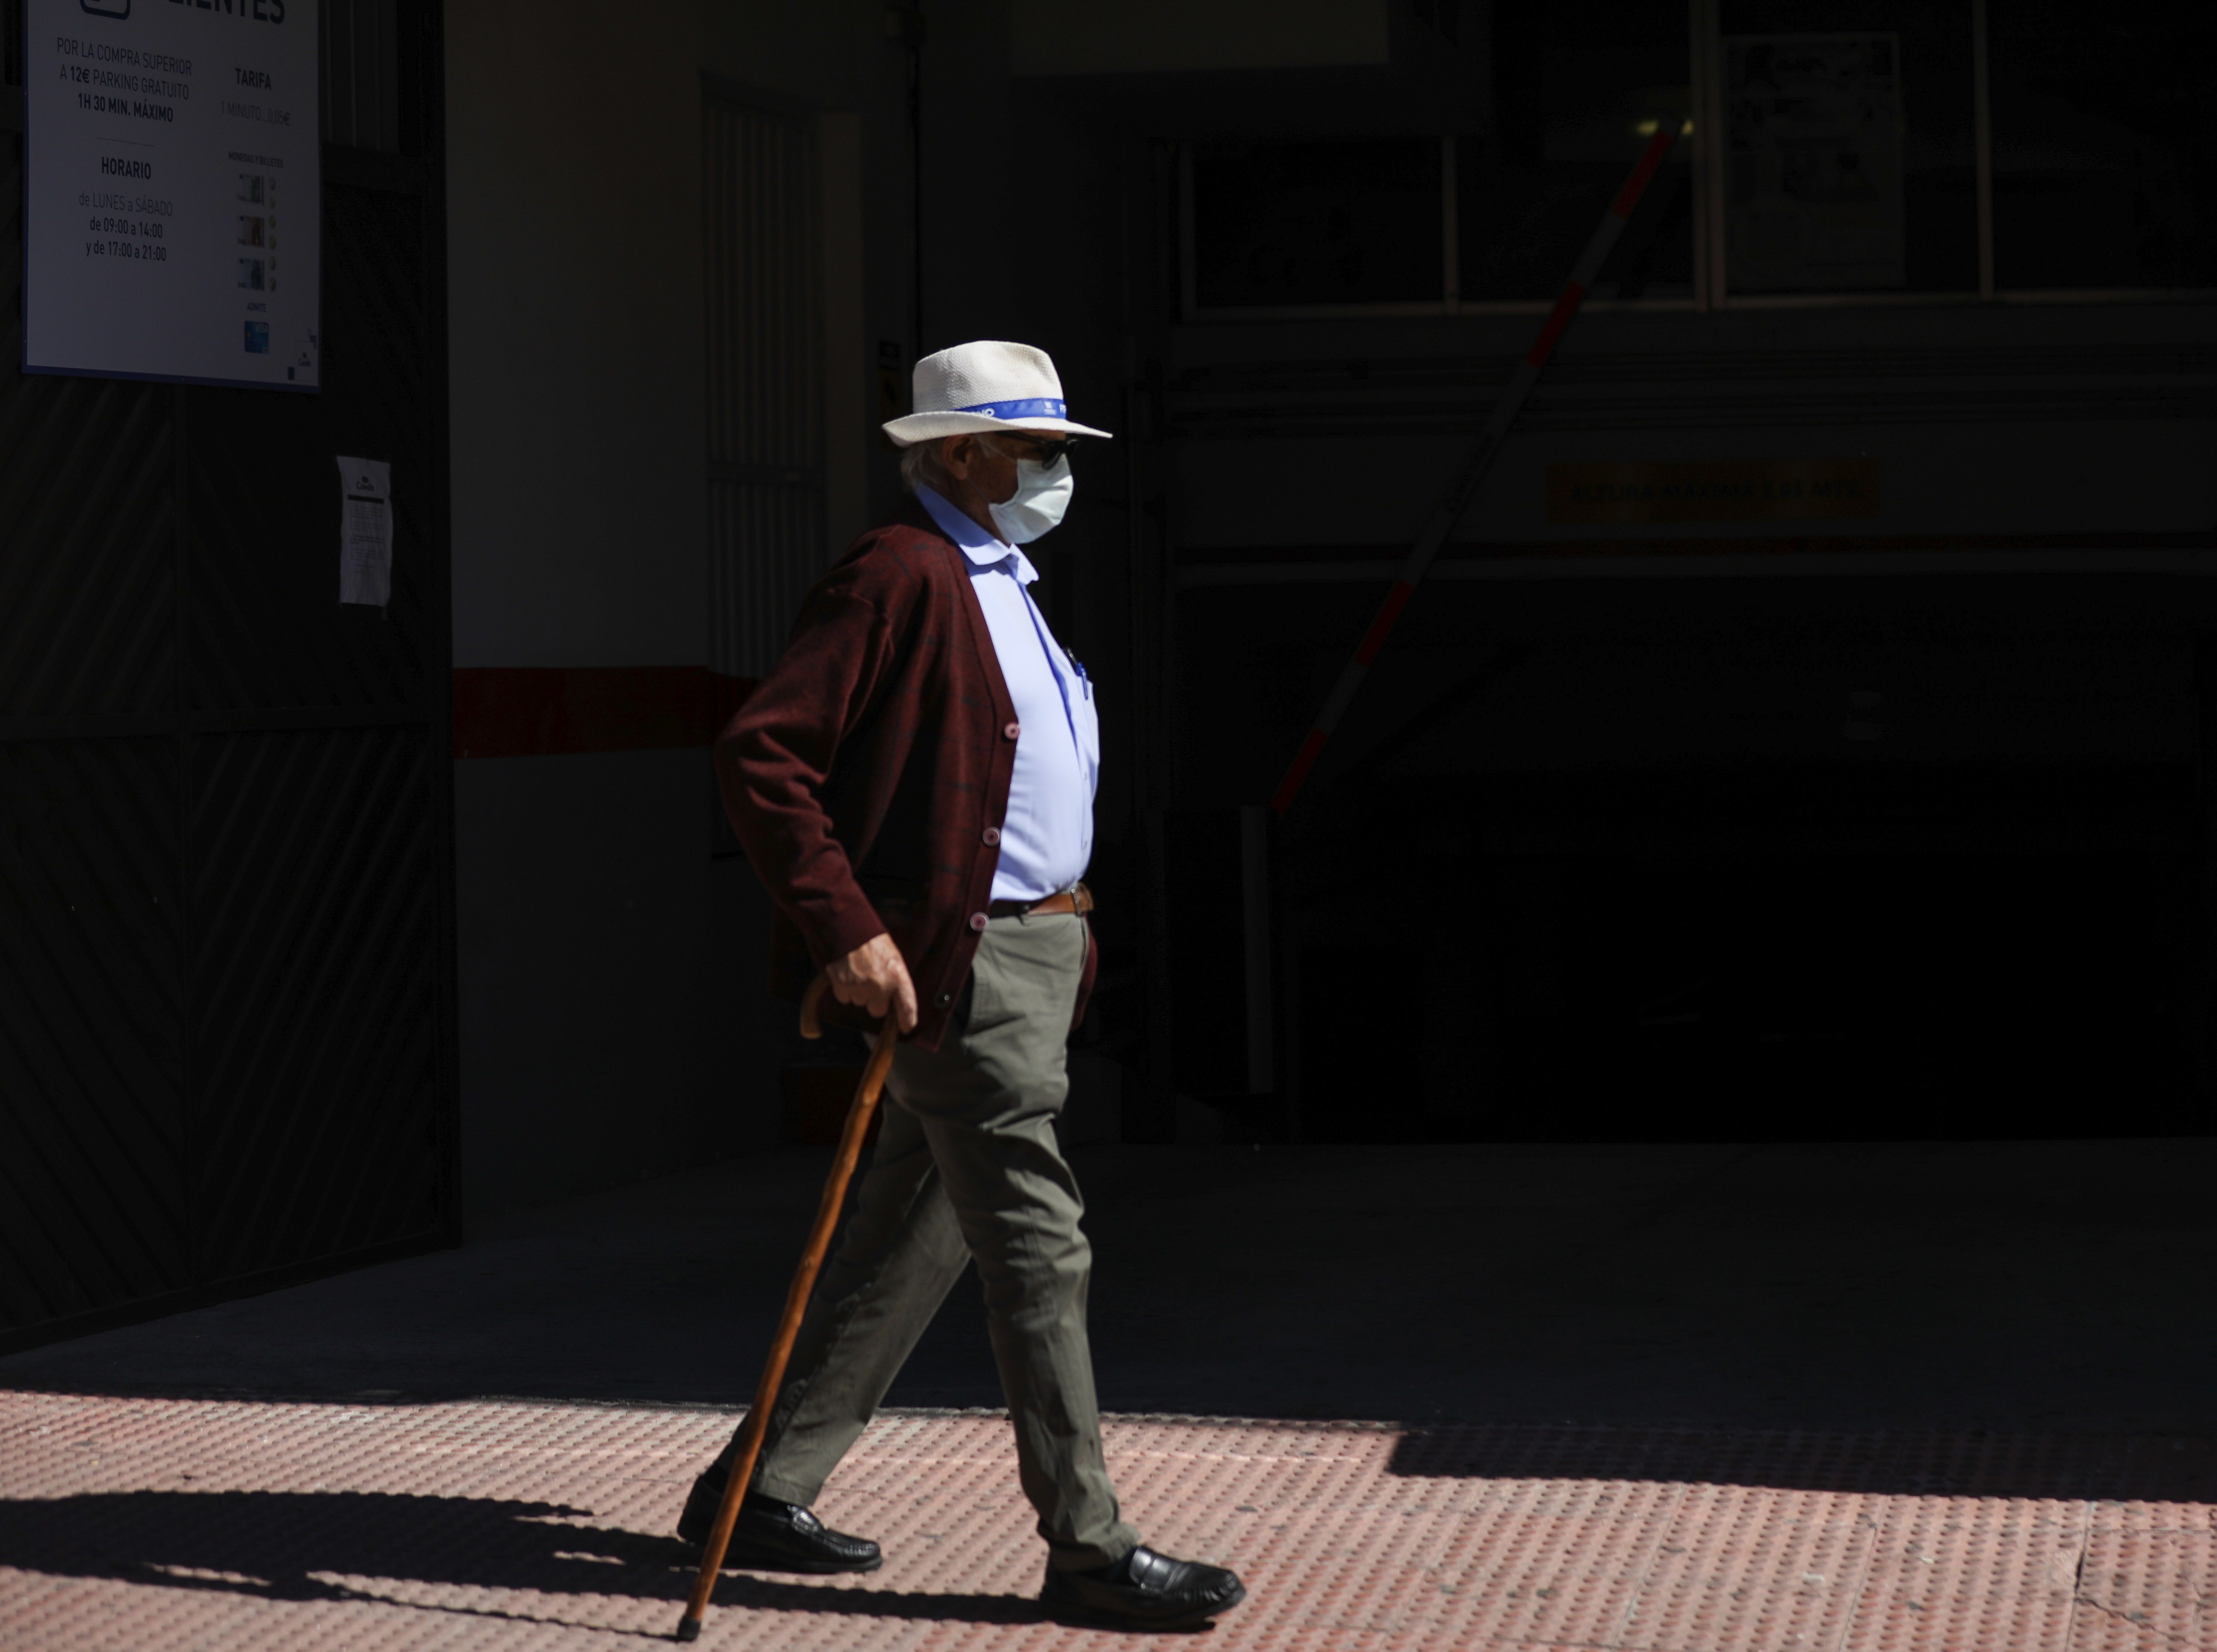 Los mayores de 75 años de pequeñas ciudades denuncian discriminación por edad durante el Covid-19